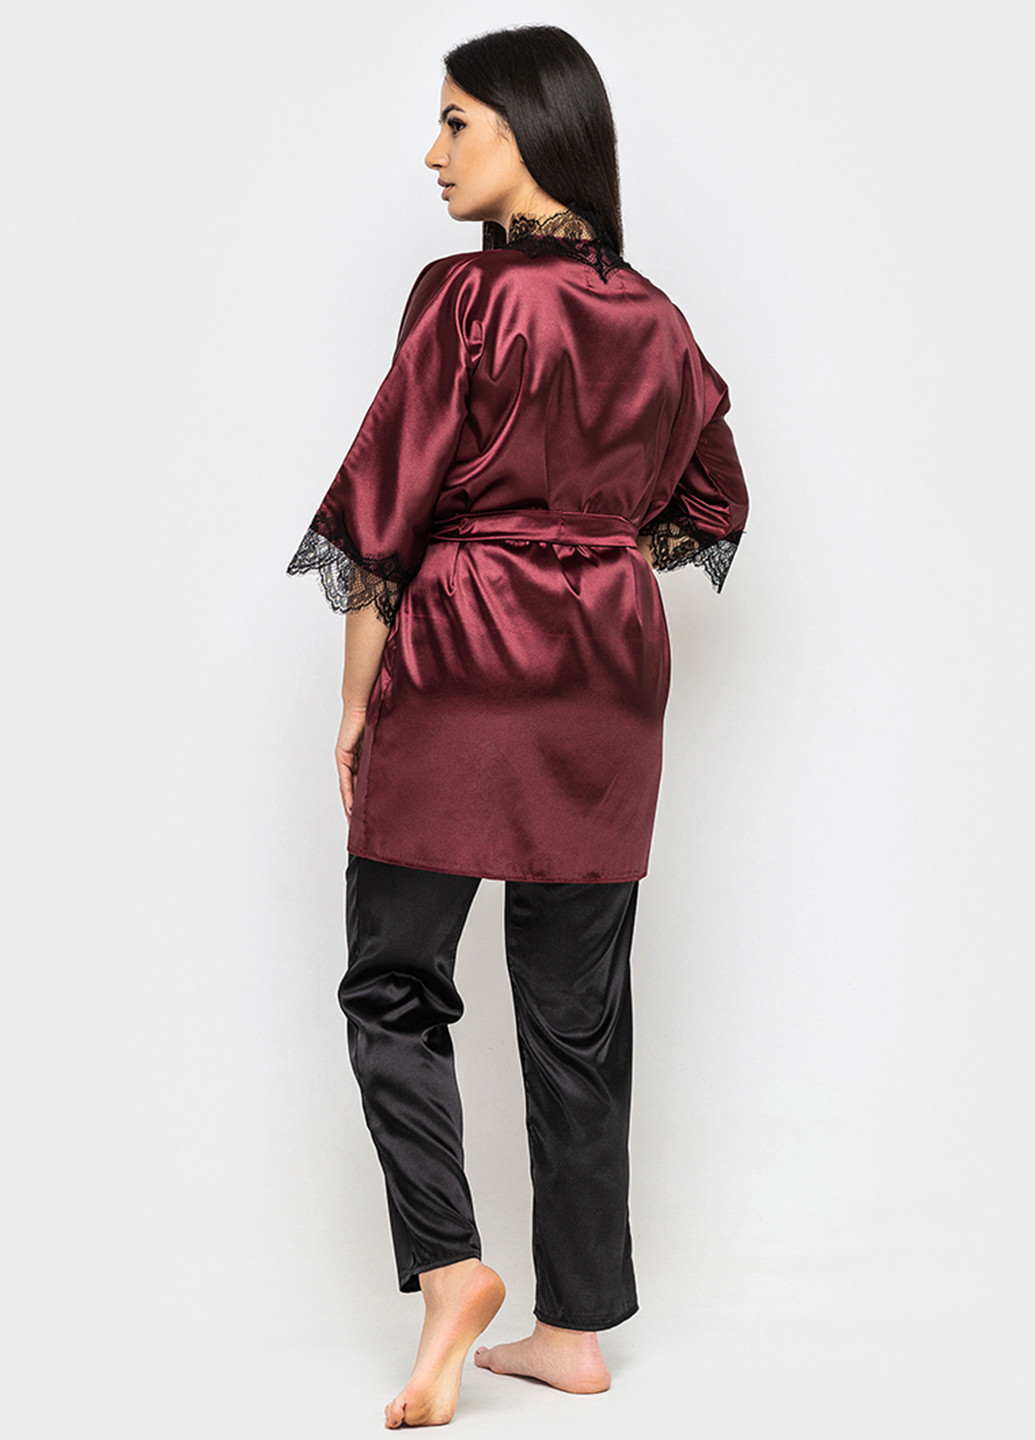 Бордовый демисезонный комплект (халат, топ, брюки) Ghazel